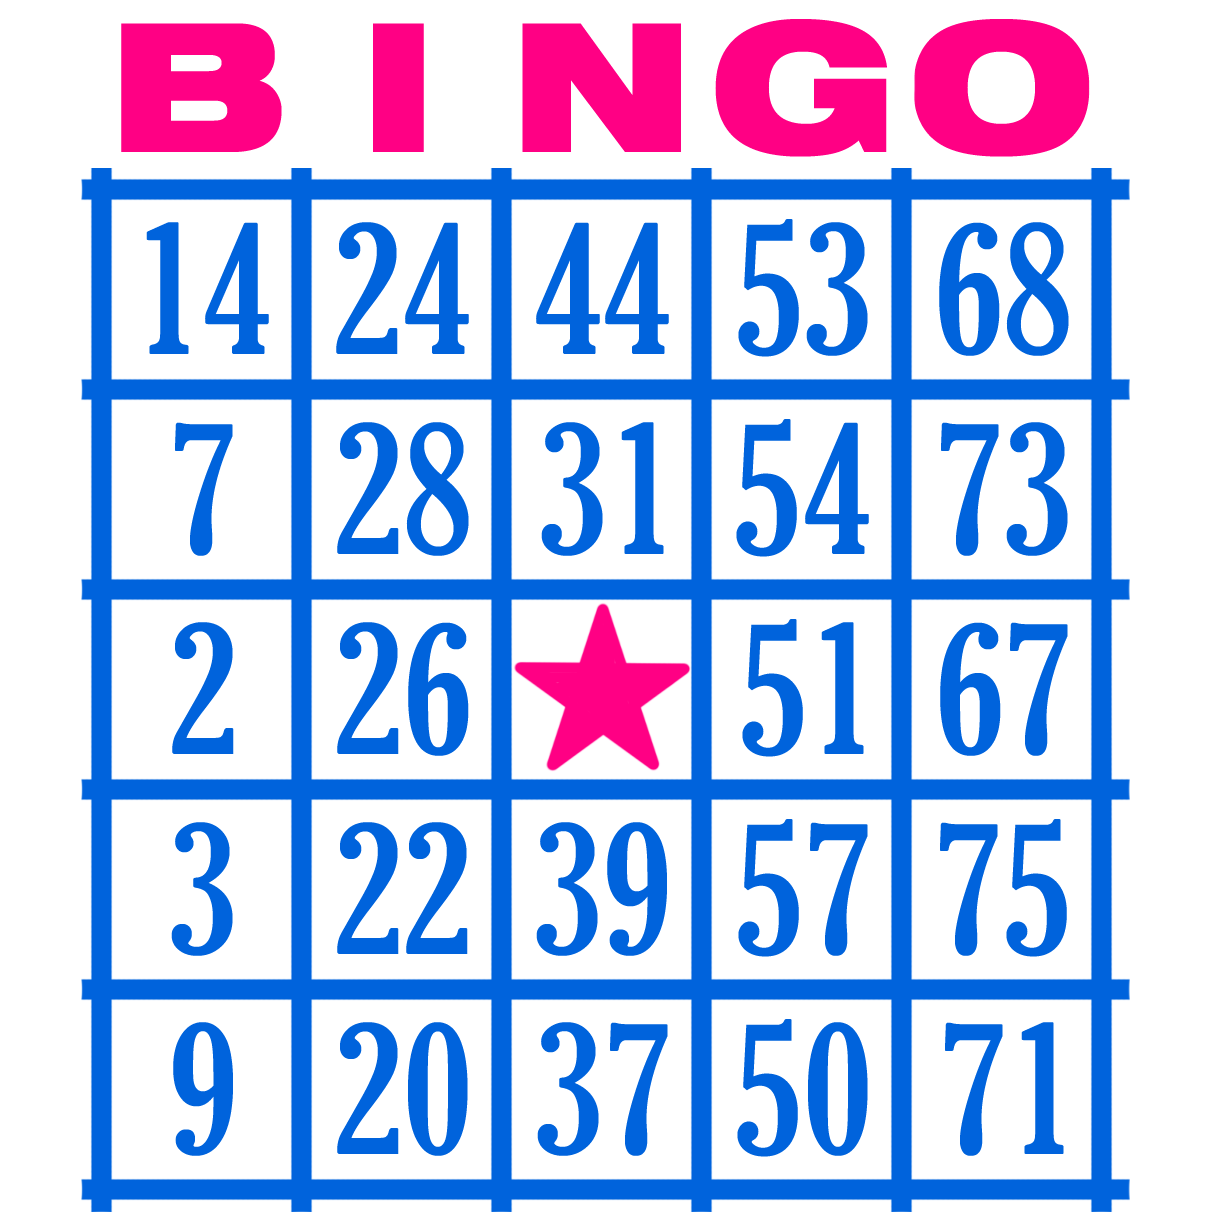 Jugar al bingo online